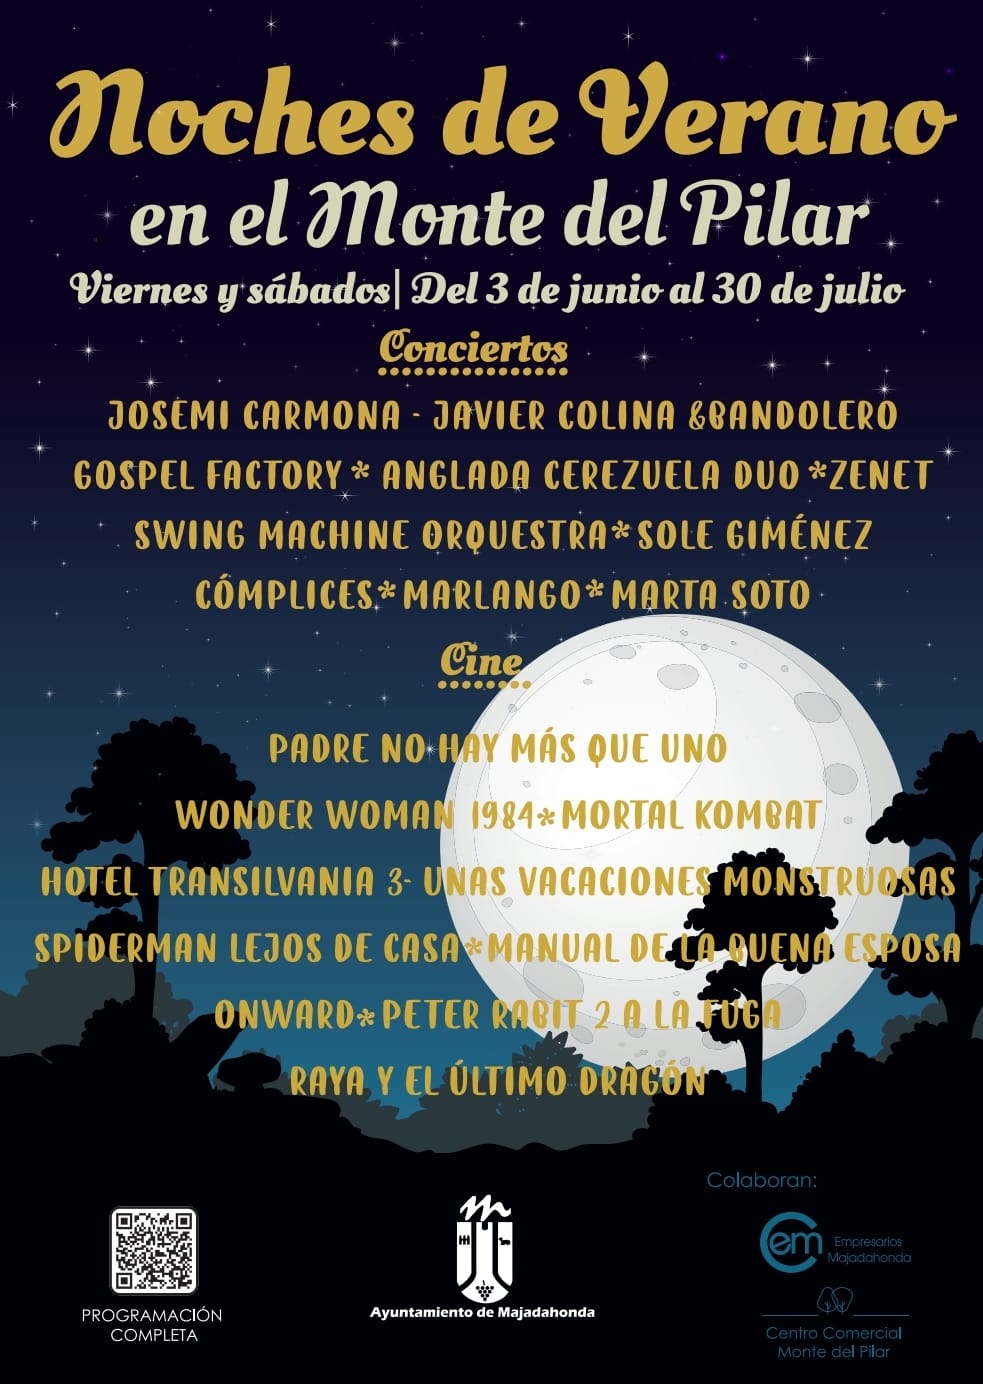 Noches de conciertos y cine este verano en el Monte del Pilar